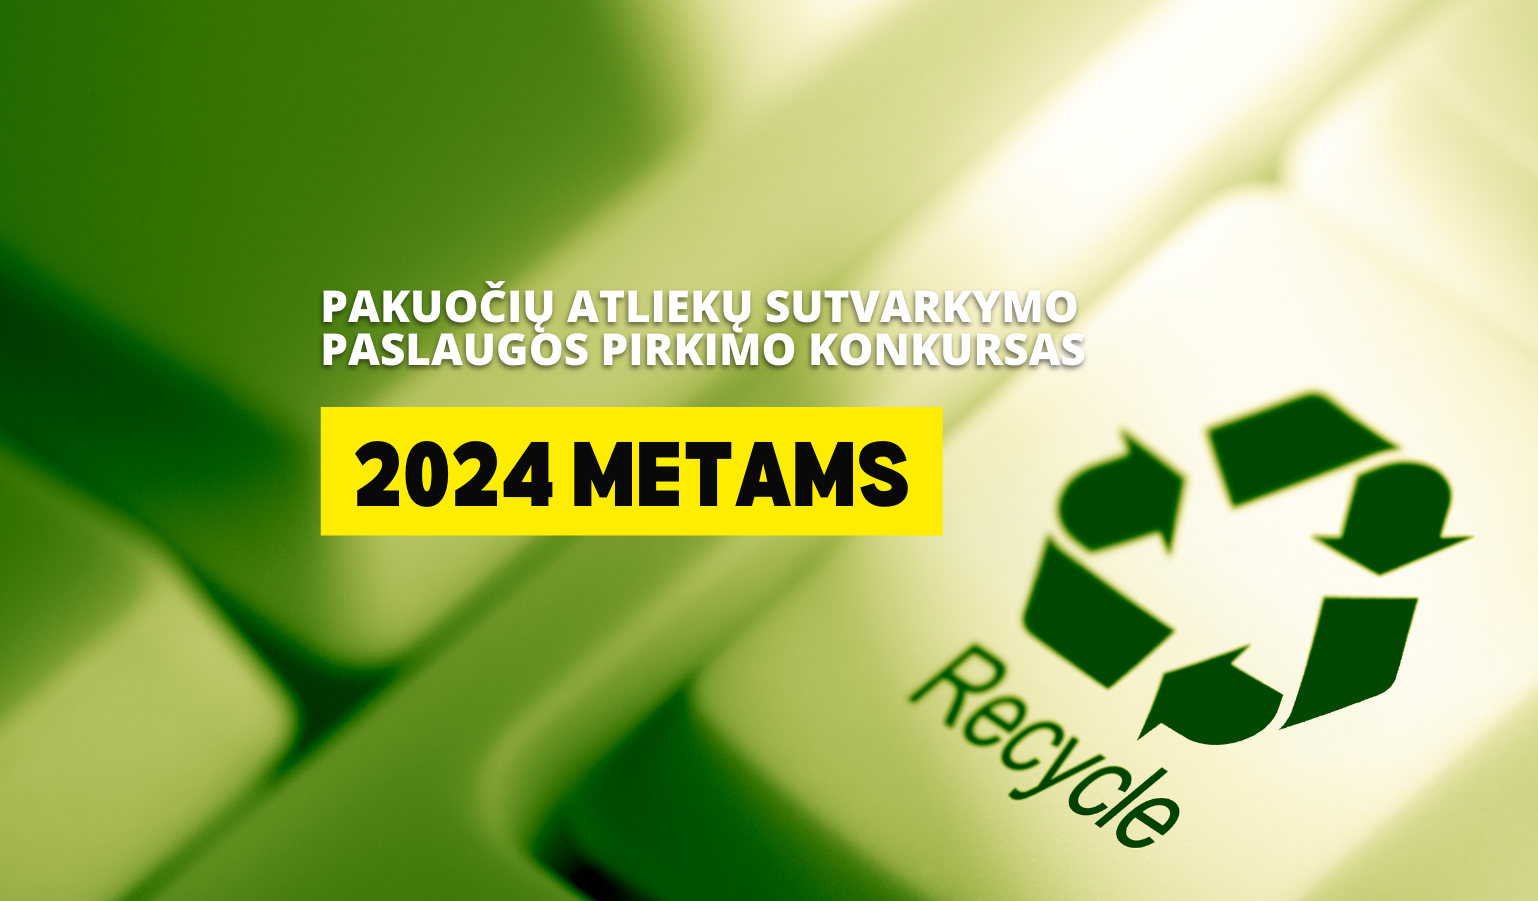 Pakuočių atliekų sutvarkymo paslaugos pirkimo konkursas 2024 metams